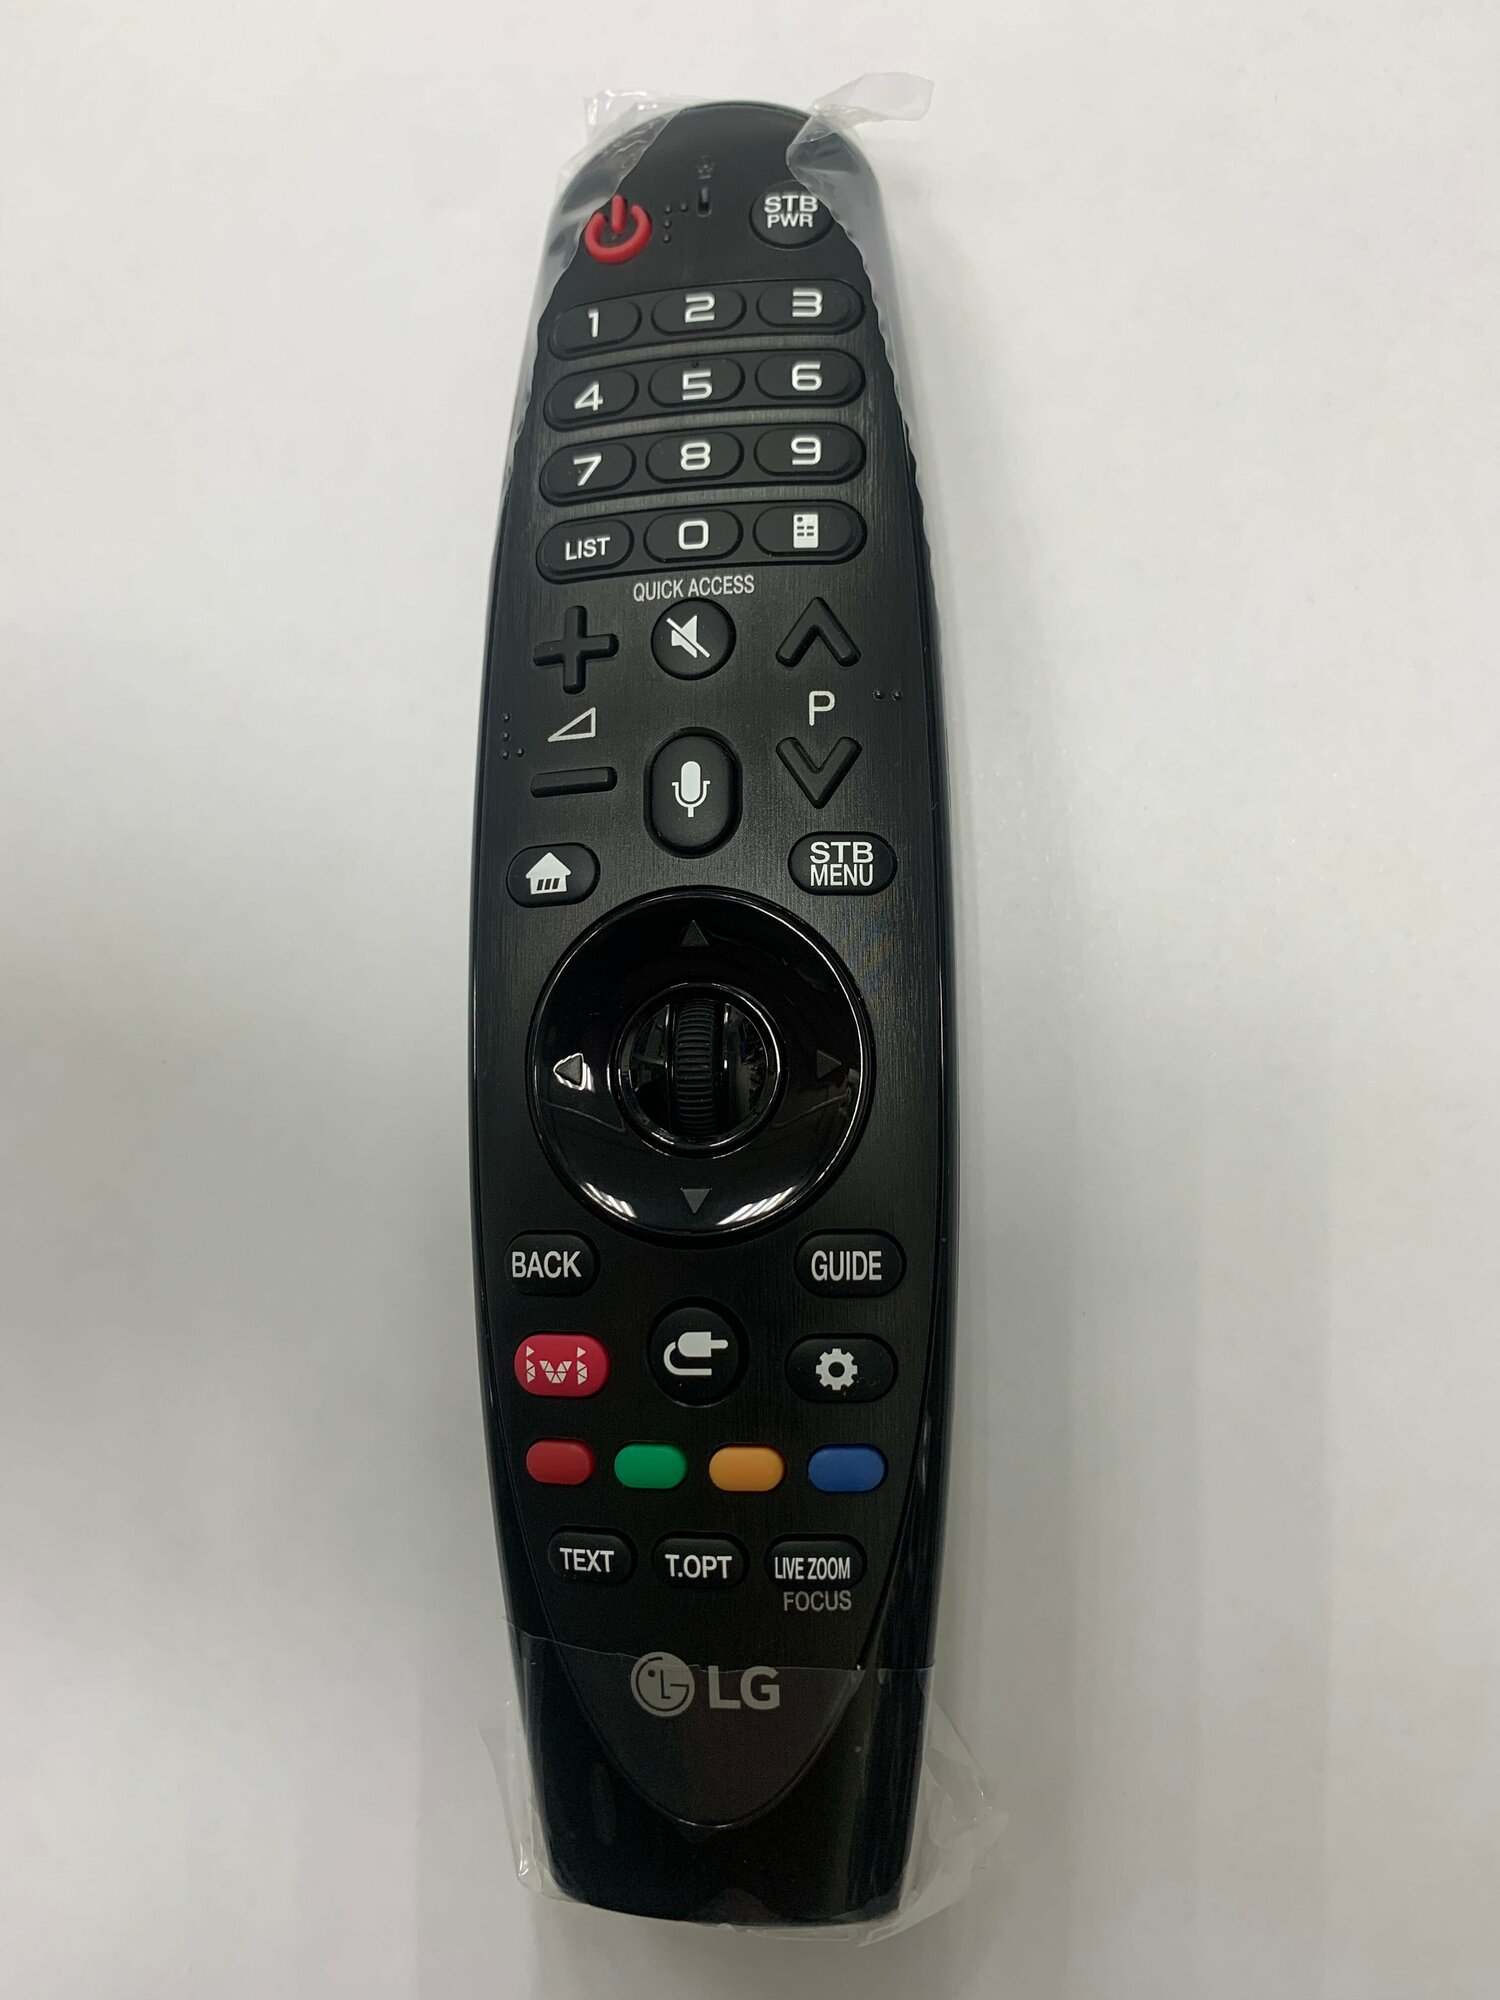 Голосовой пульт для телевизоров LG Smart TV AN-MR18BA